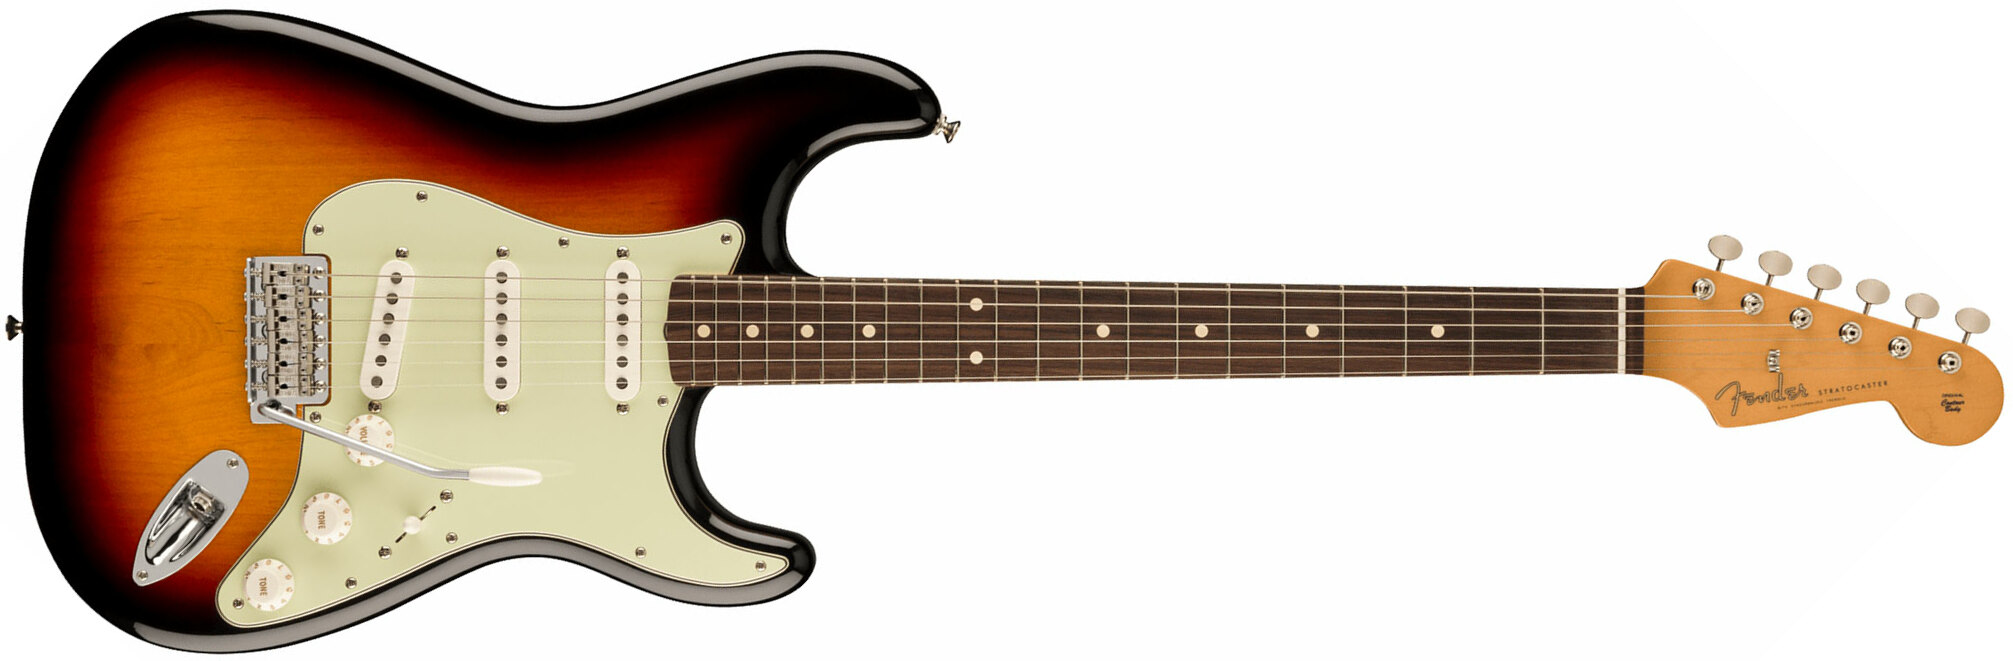 Fender Strat 60s Vintera 2 Mex 3s Trem Rw - 3-color Sunburst - Guitare Électrique Forme Str - Main picture